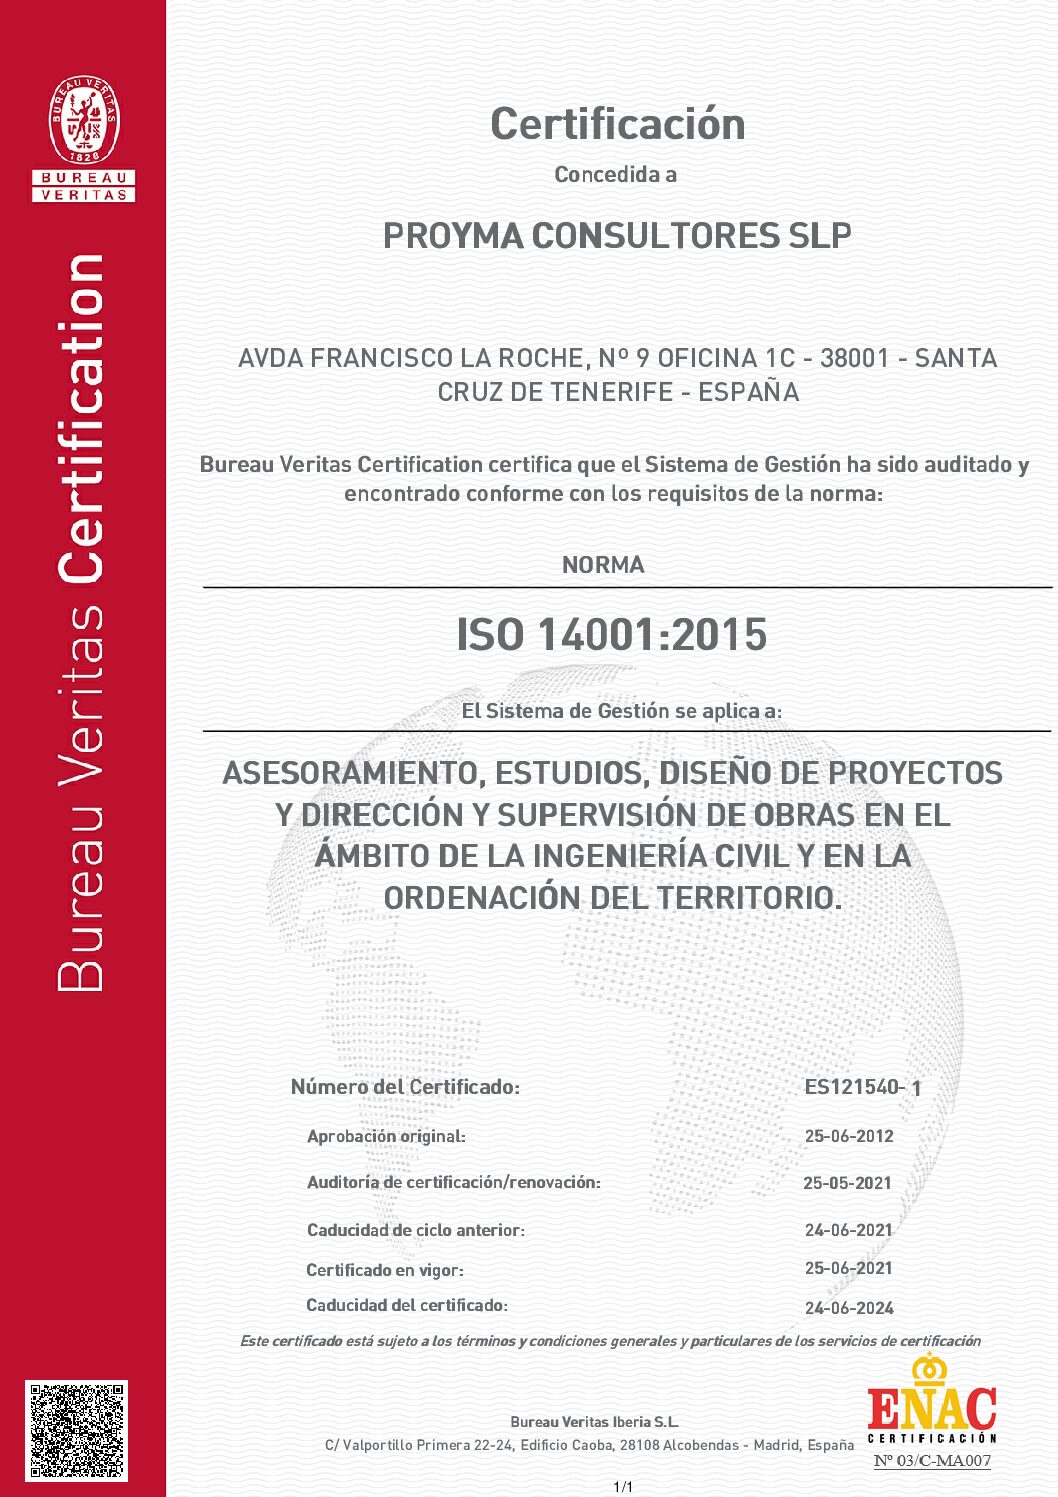 Sistema de Gestión Ambiental certificado bajo la norma ISO 14001:2004